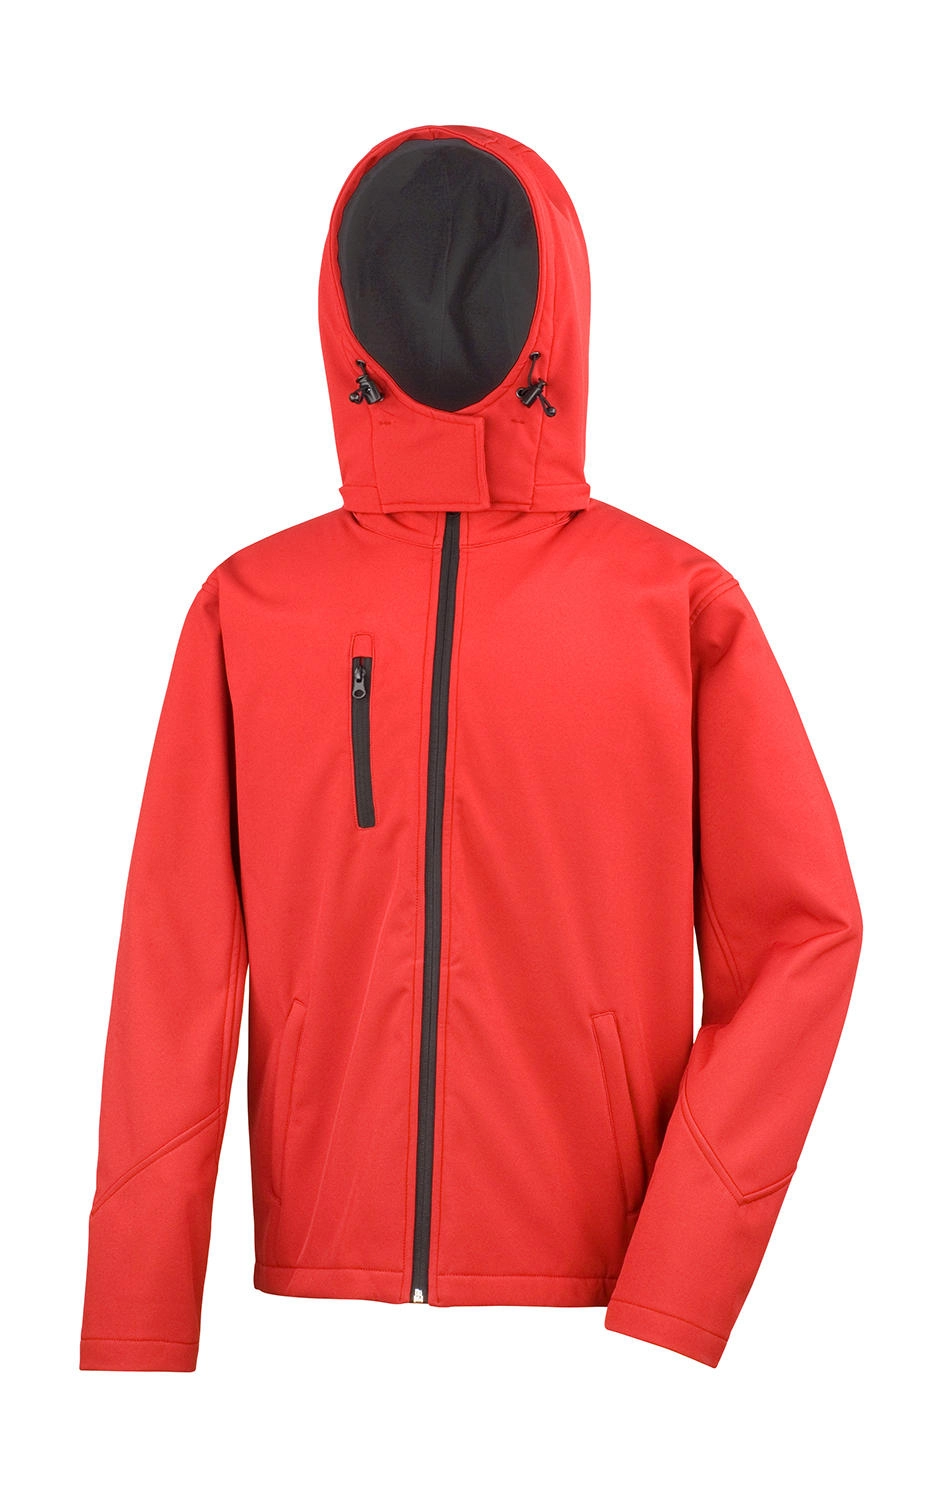 TX Performance Hooded Softshell Jacket zum Besticken und Bedrucken in der Farbe Red/Black mit Ihren Logo, Schriftzug oder Motiv.